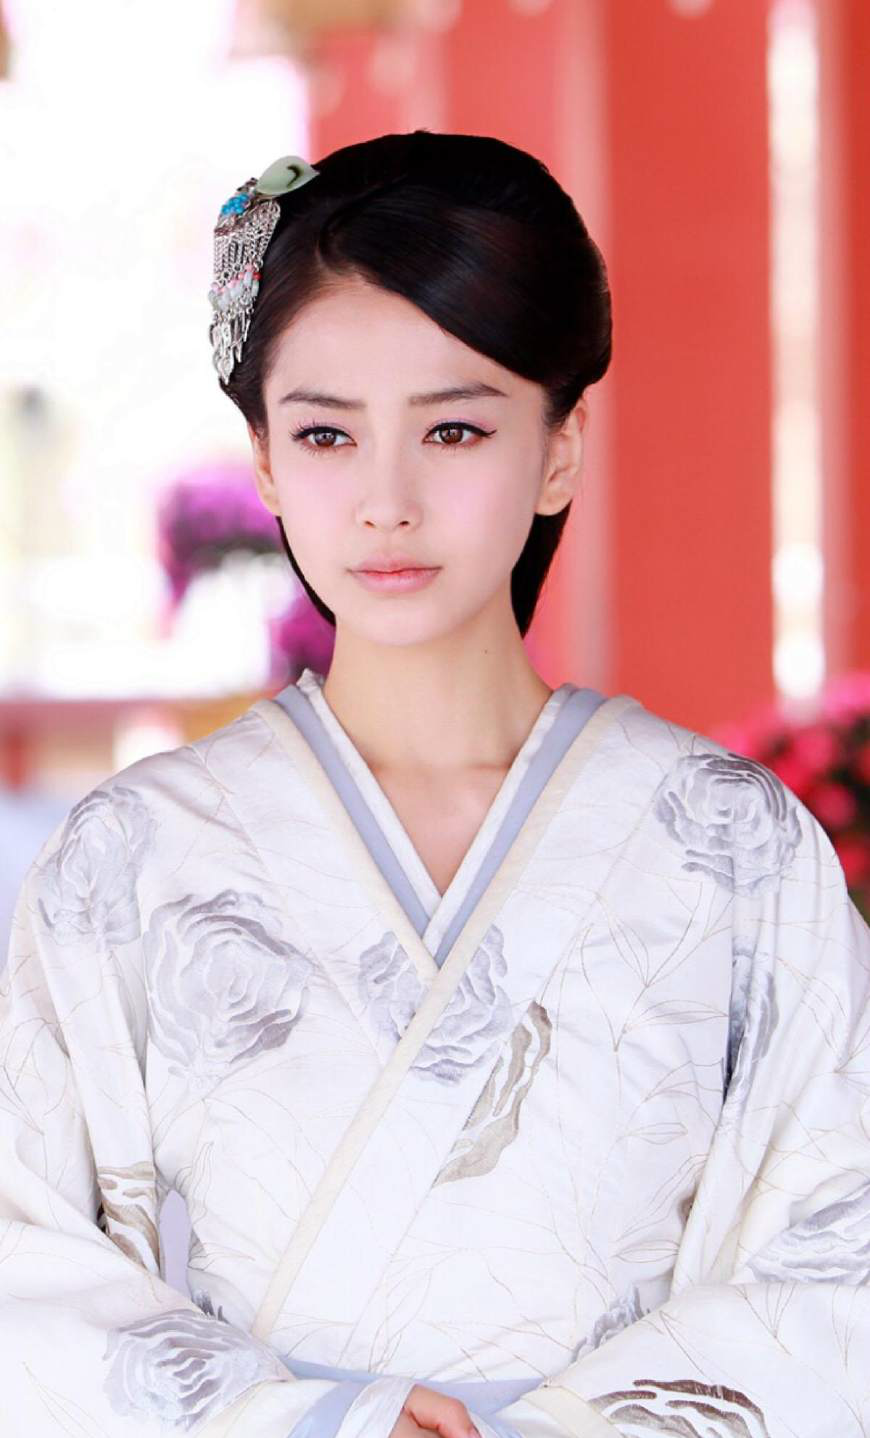 杨颖主演的电视剧《云中歌》,杨颖第一部古装剧,饰演的女主是异域